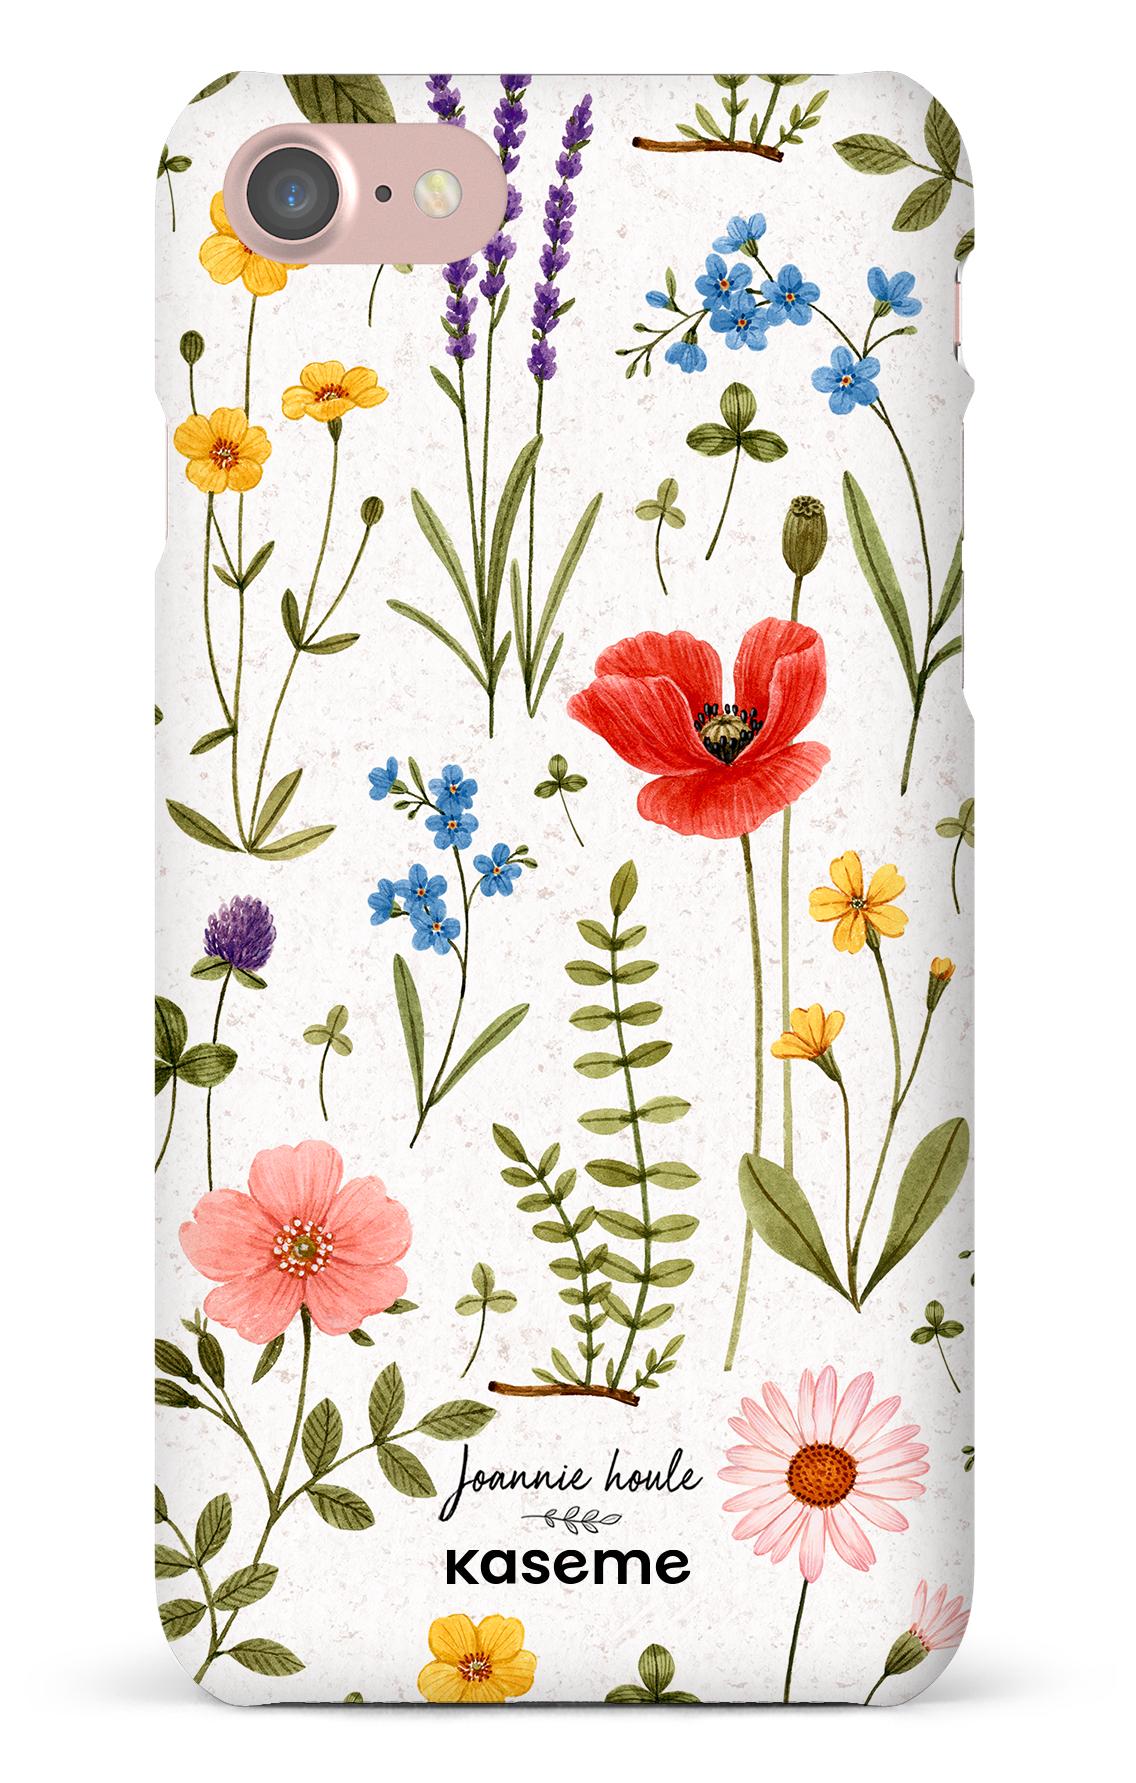 Wild Flowers by Joannie Houle - iPhone 7